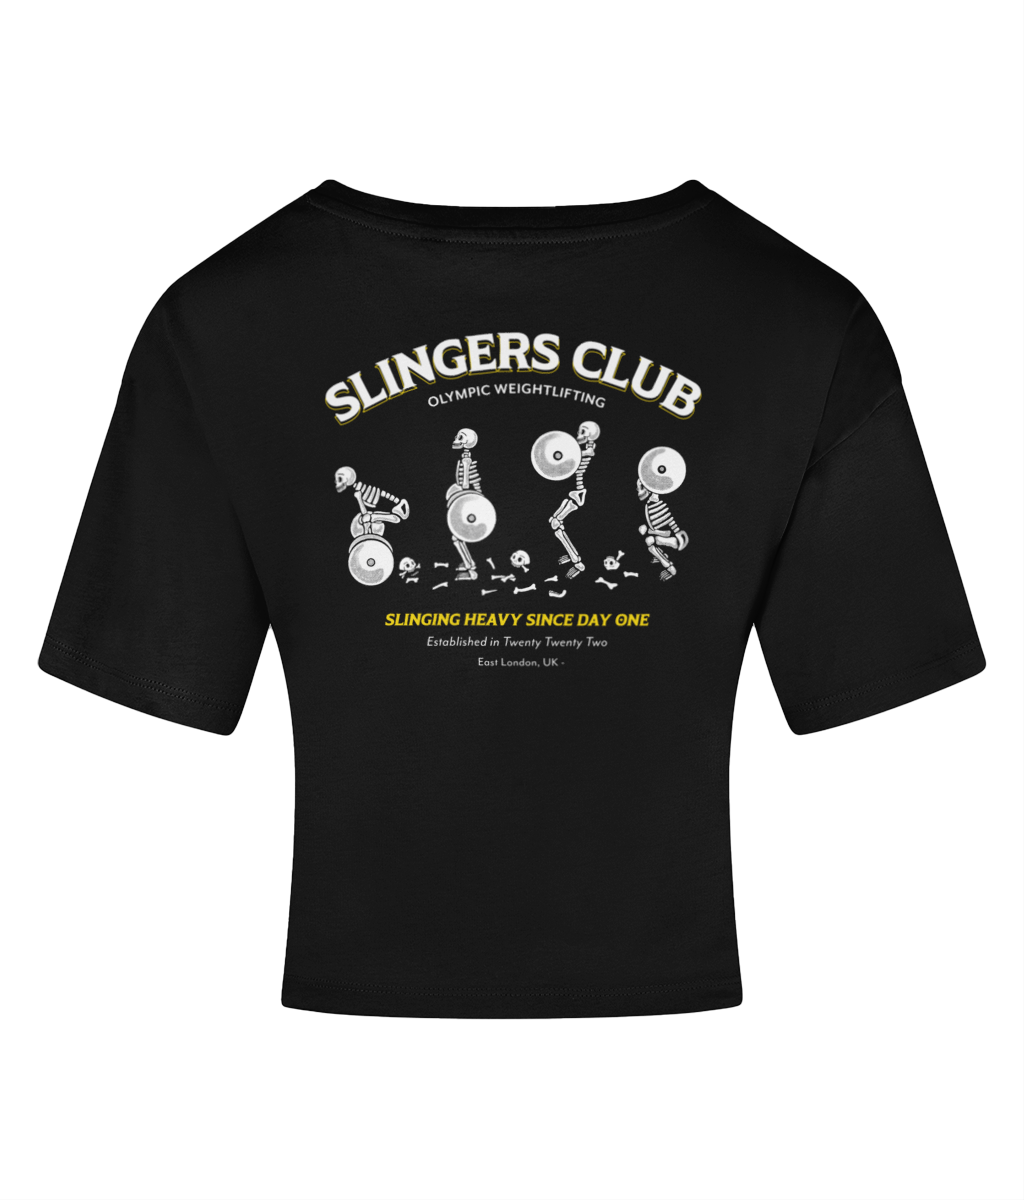 Snatching skeleton crop tee - Slingers club